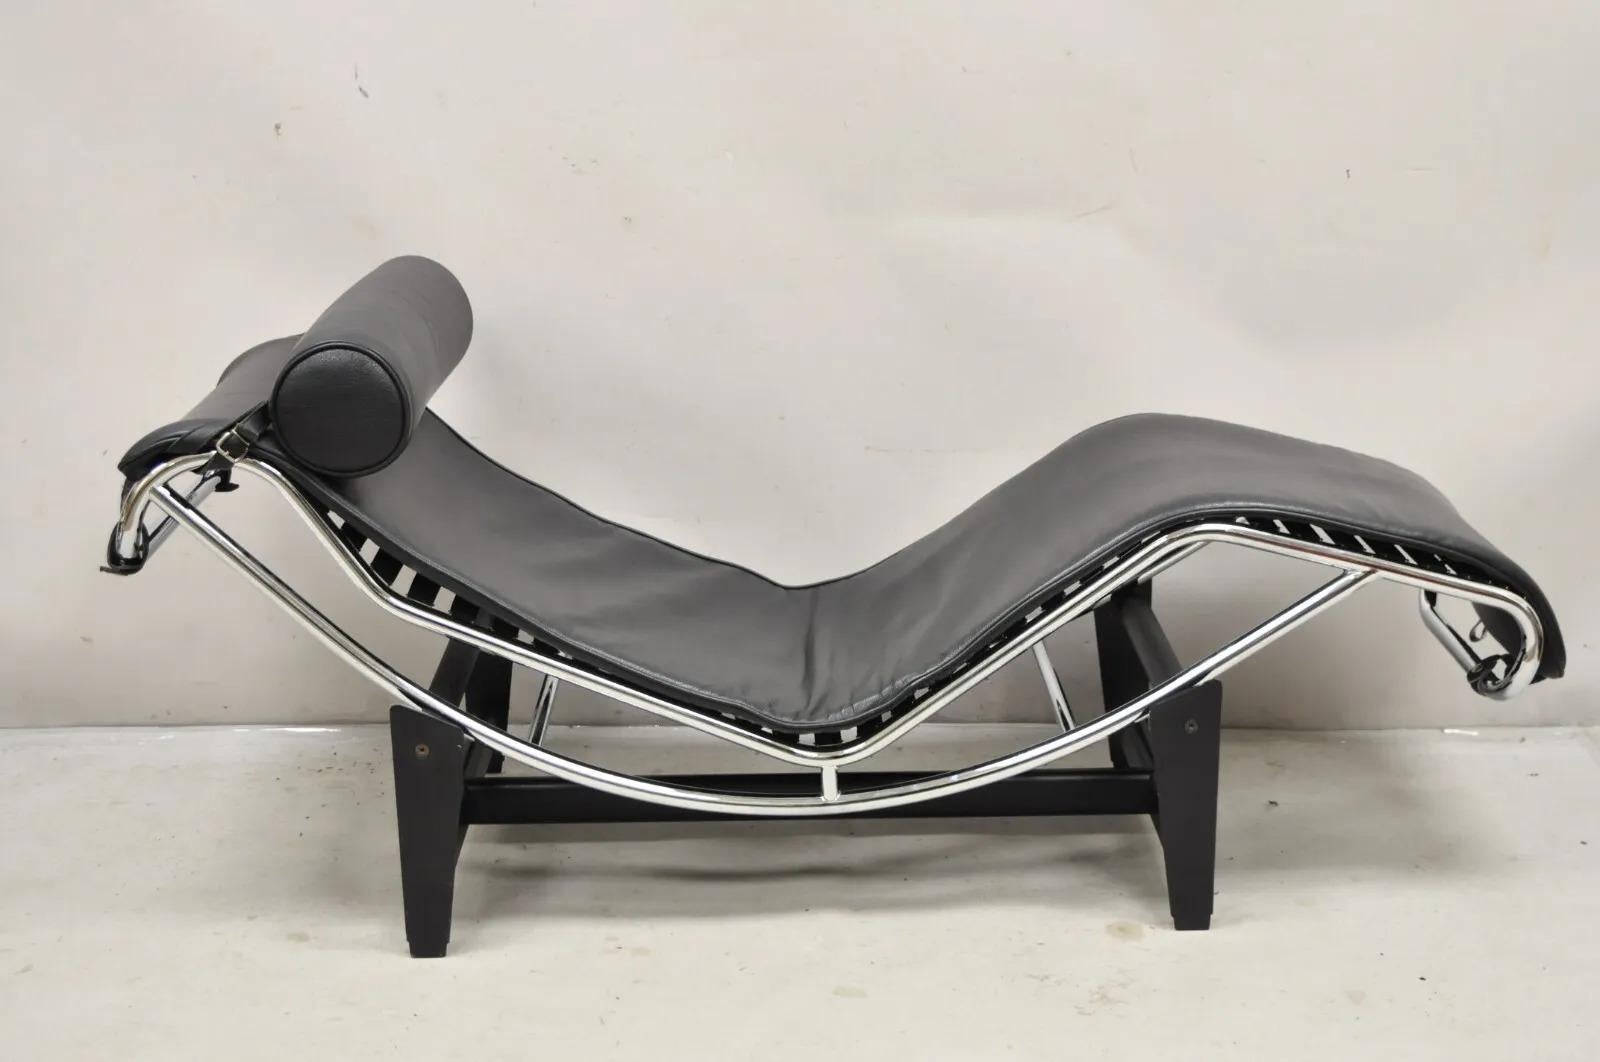 Réplique de la chaise longue Le Corbusier Style LC4 en cuir noir avec forme réglable. Vers la fin du 20e siècle - début du 21e siècle. Dimensions : 27